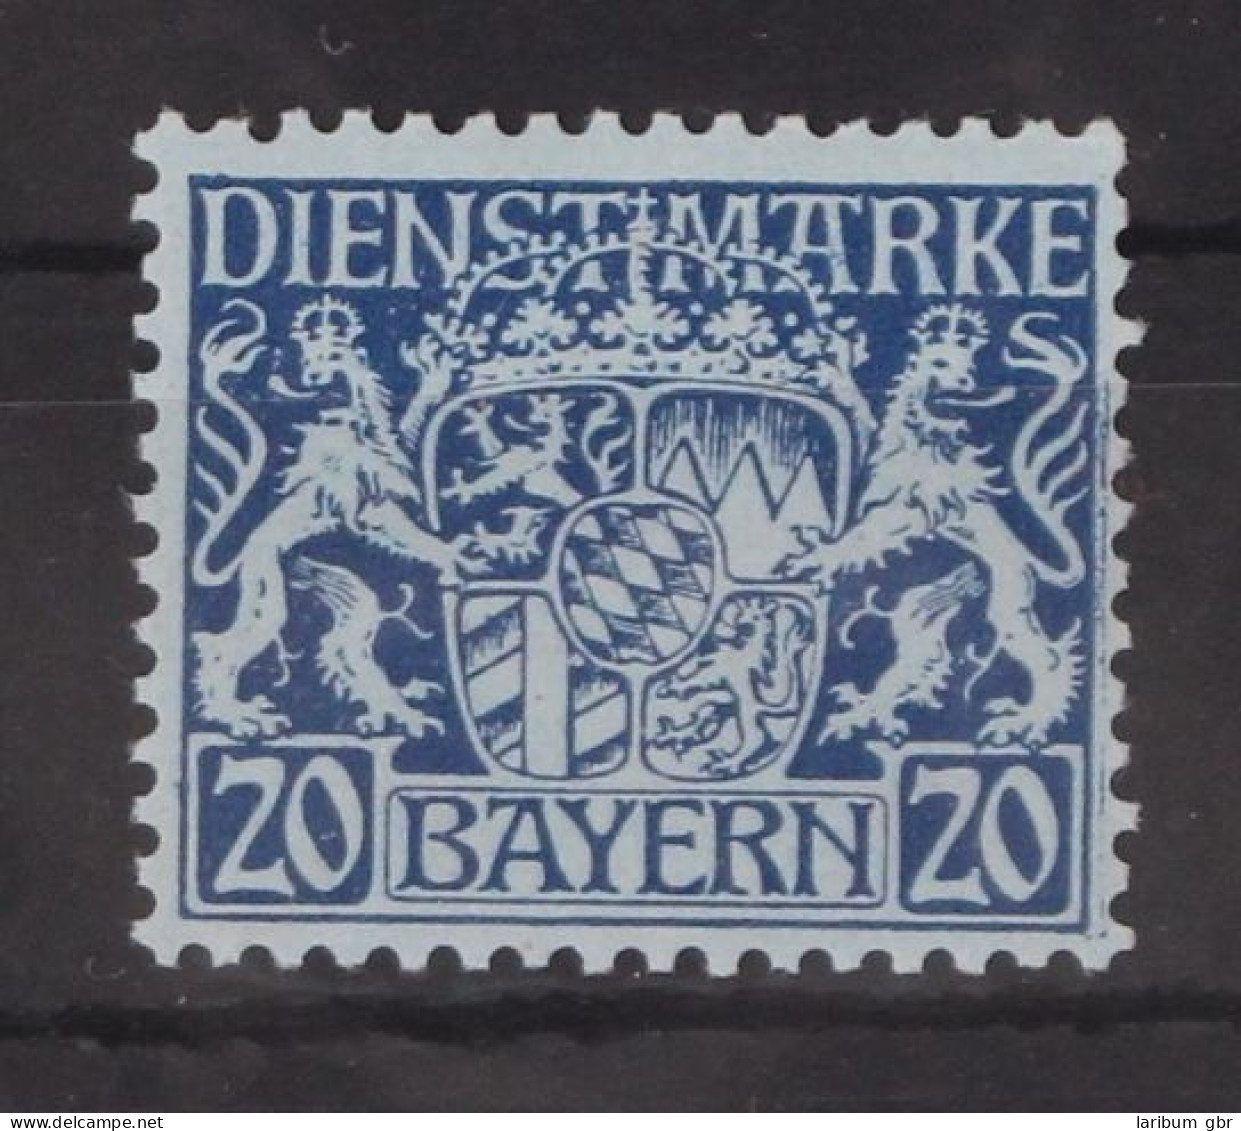 Bayern Dienstmarken 20 Postfrisch #GM097 - Mint